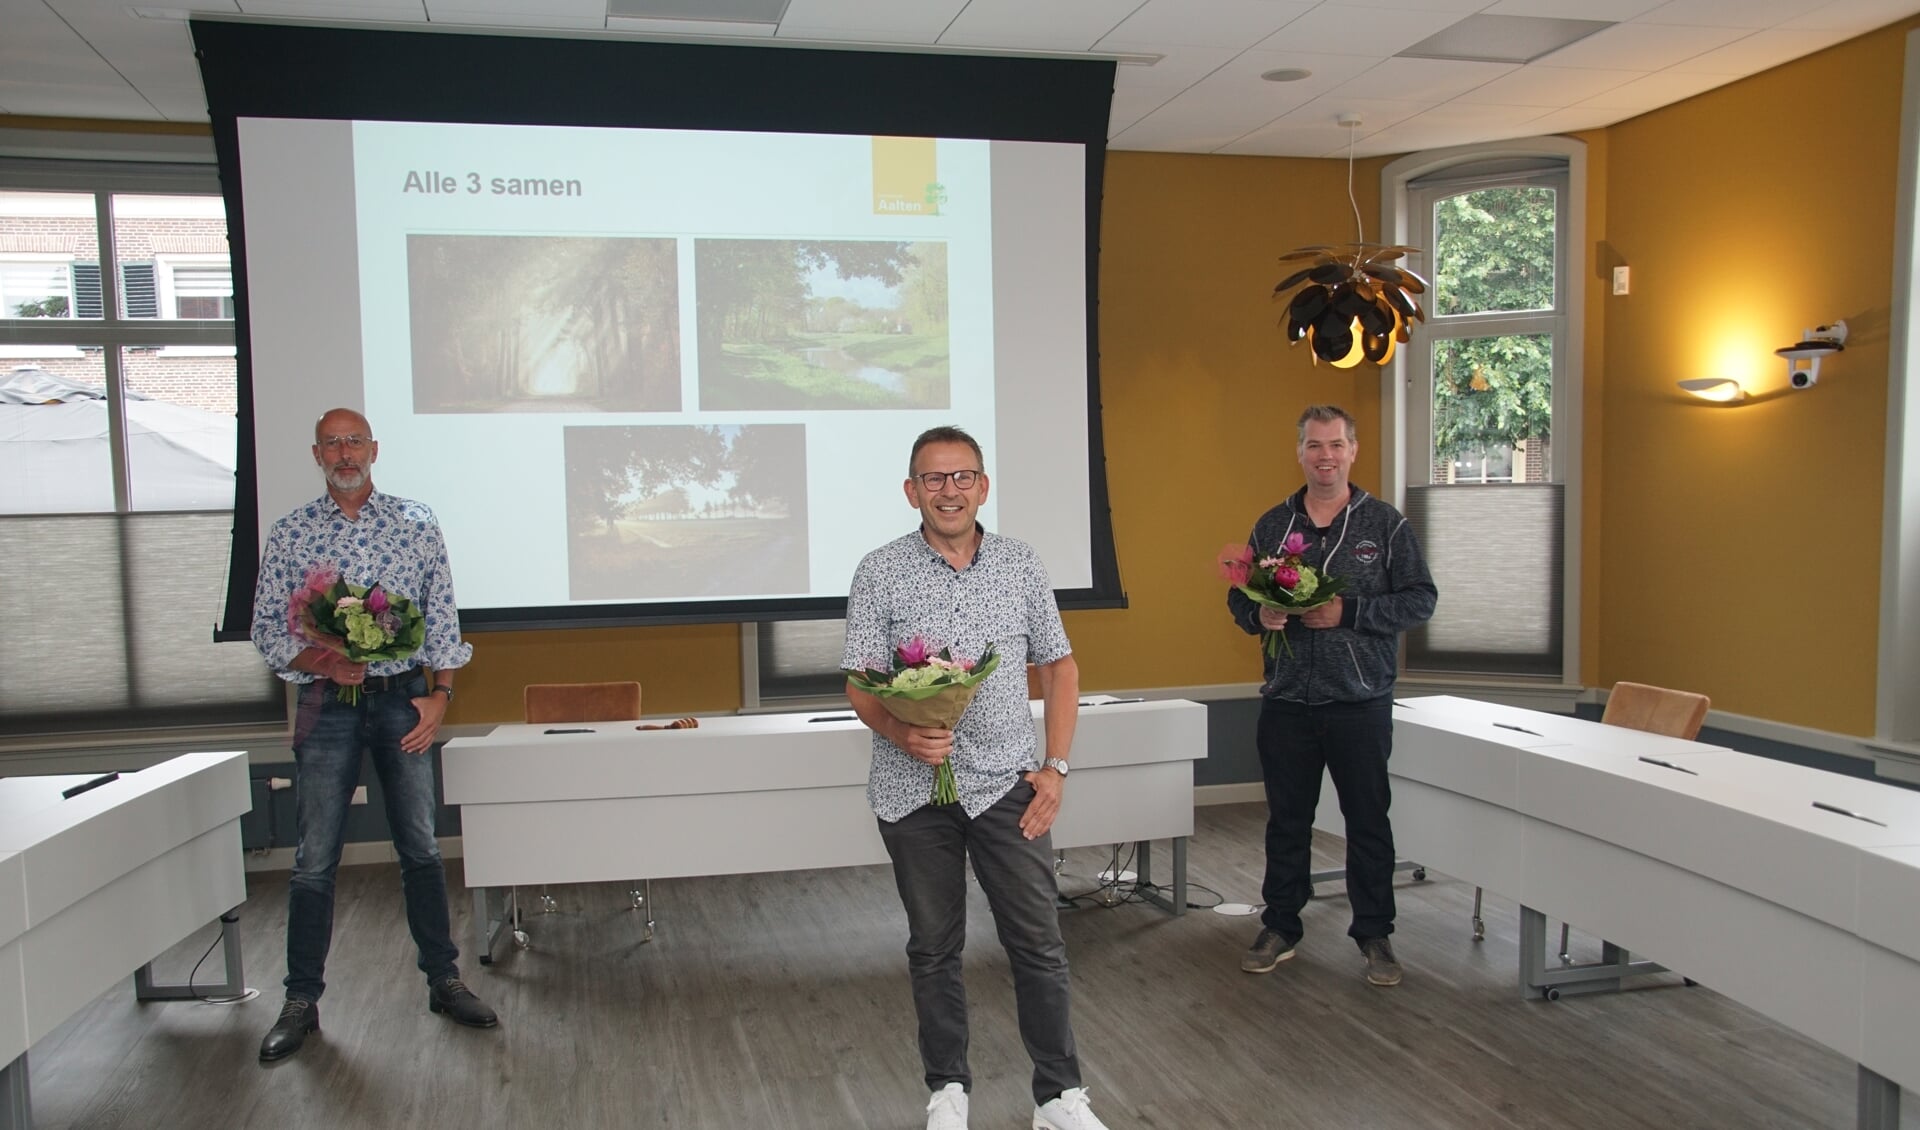 De drie prijswinnaars (vlnr) Gerjo te Linde, Ben Lammers, Sander Klein Hesselink. Foto: Frank Vinkenvleugel